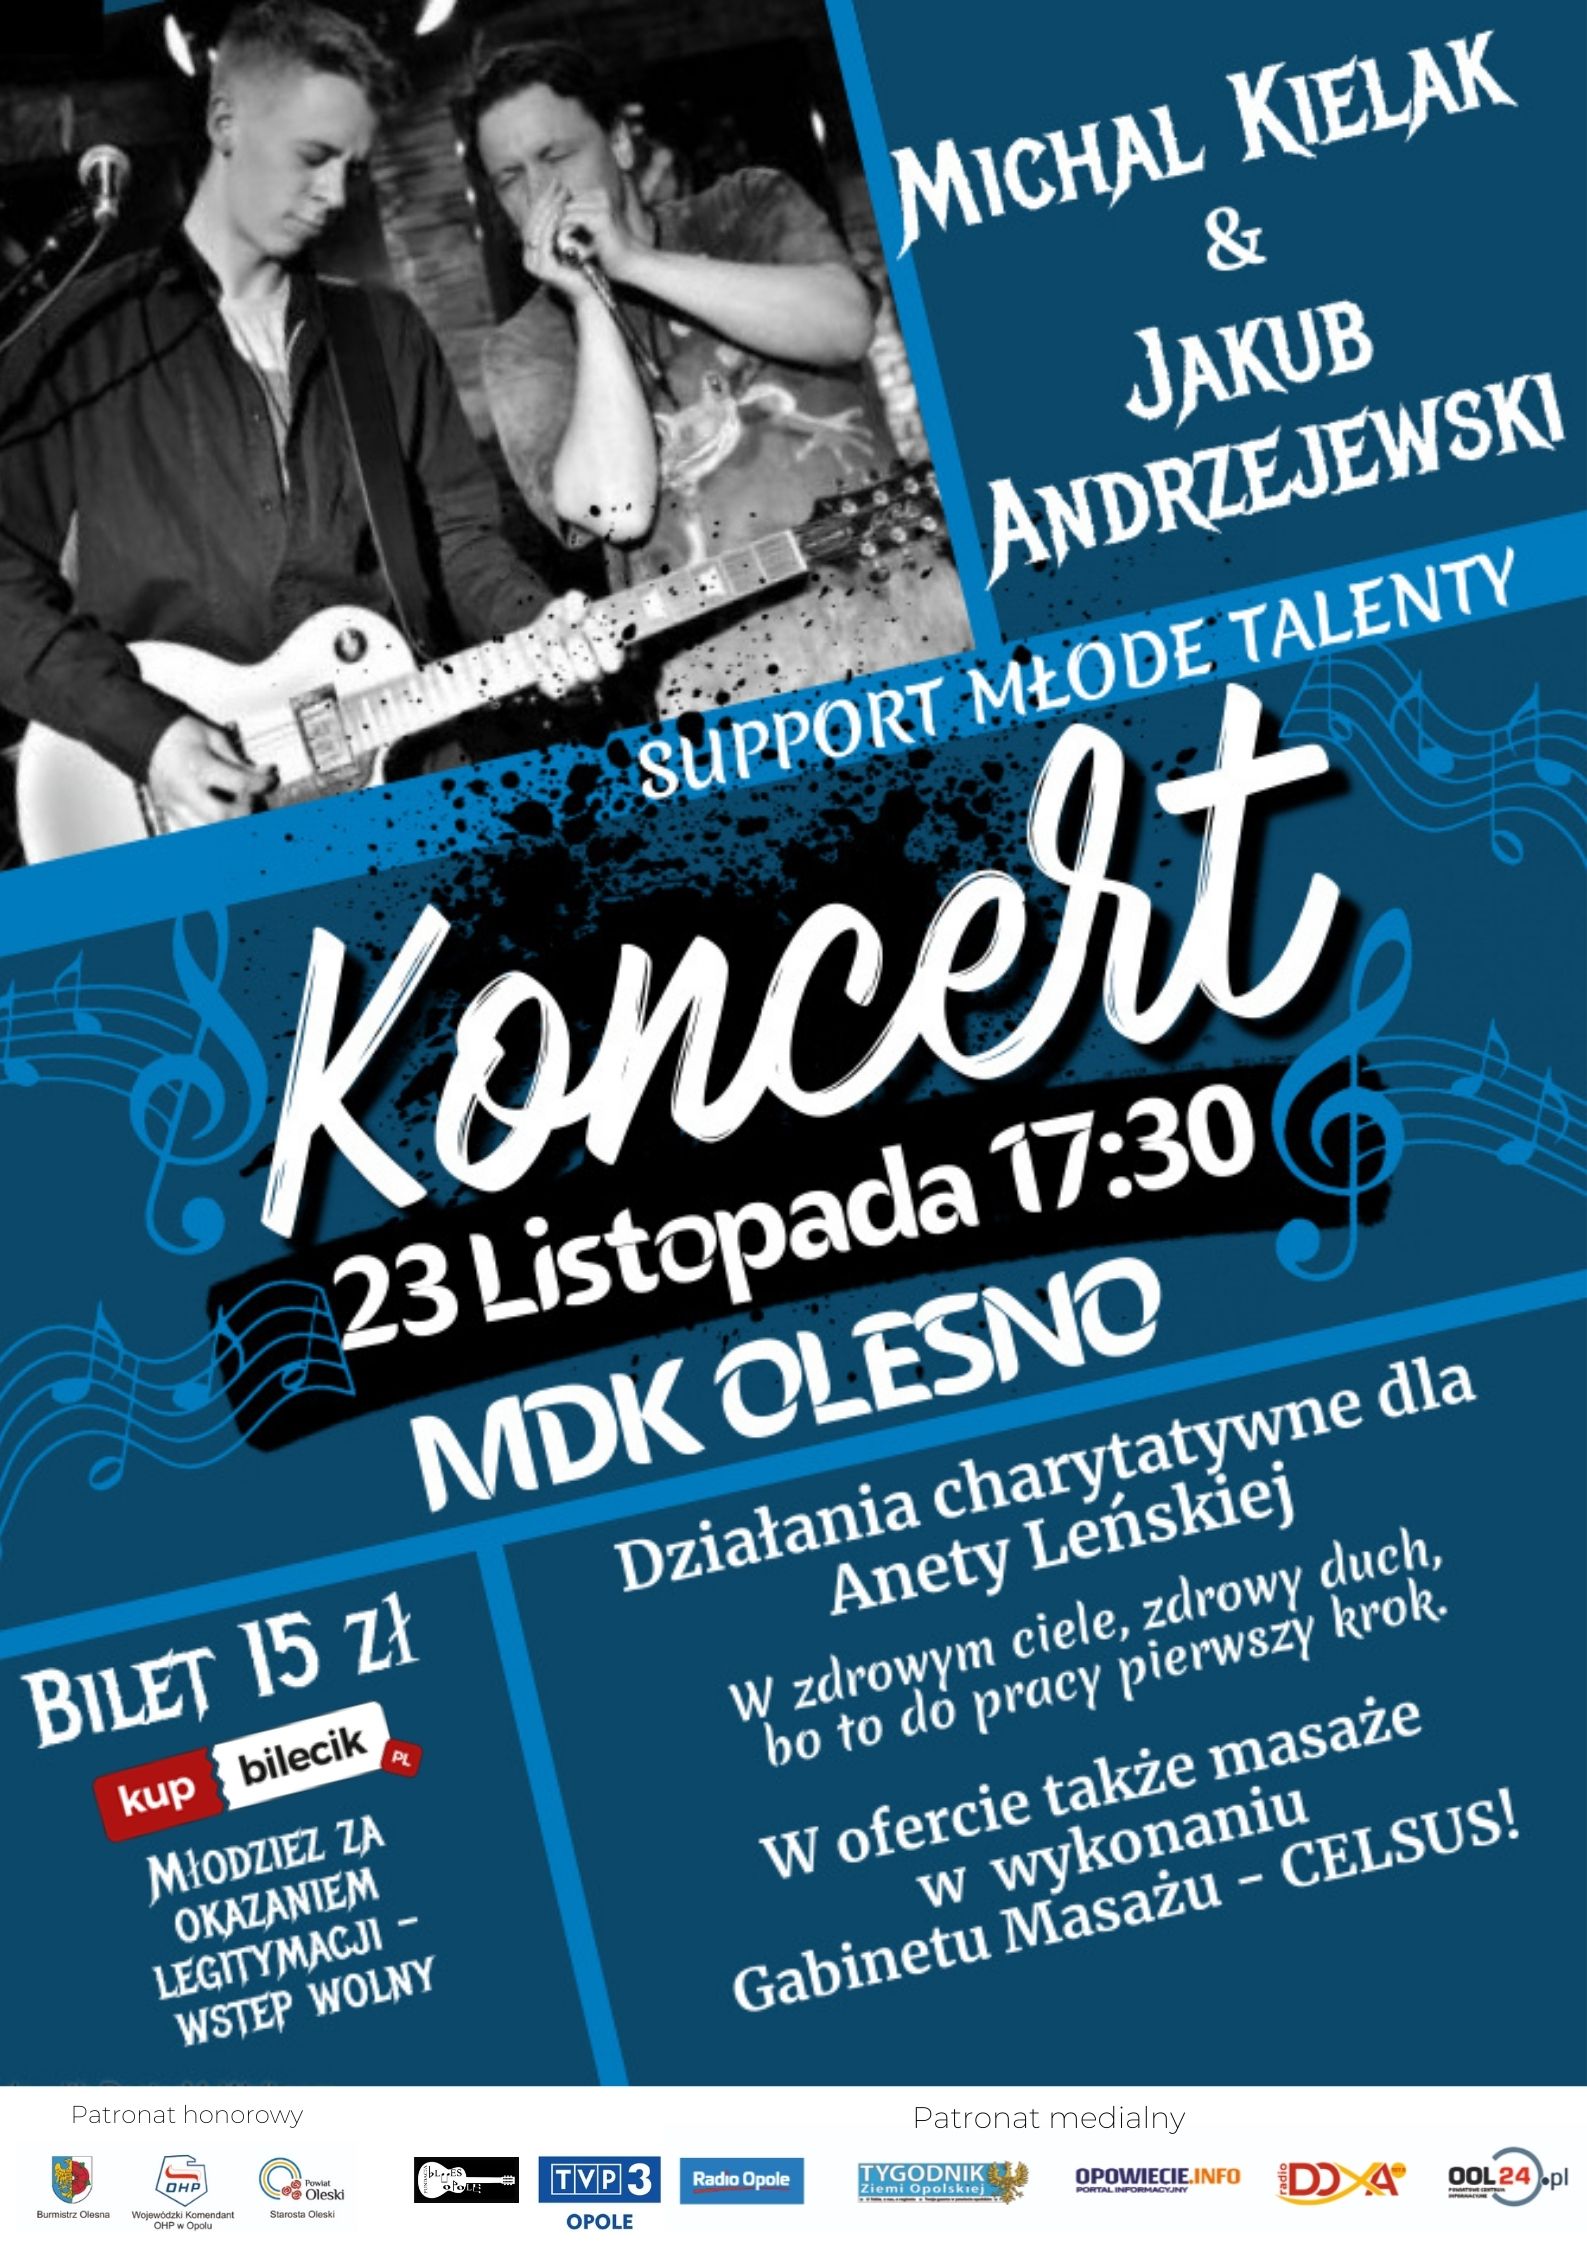 Michał Kielak i Jakub Andrzejewski zagrają koncert w Oleśnie